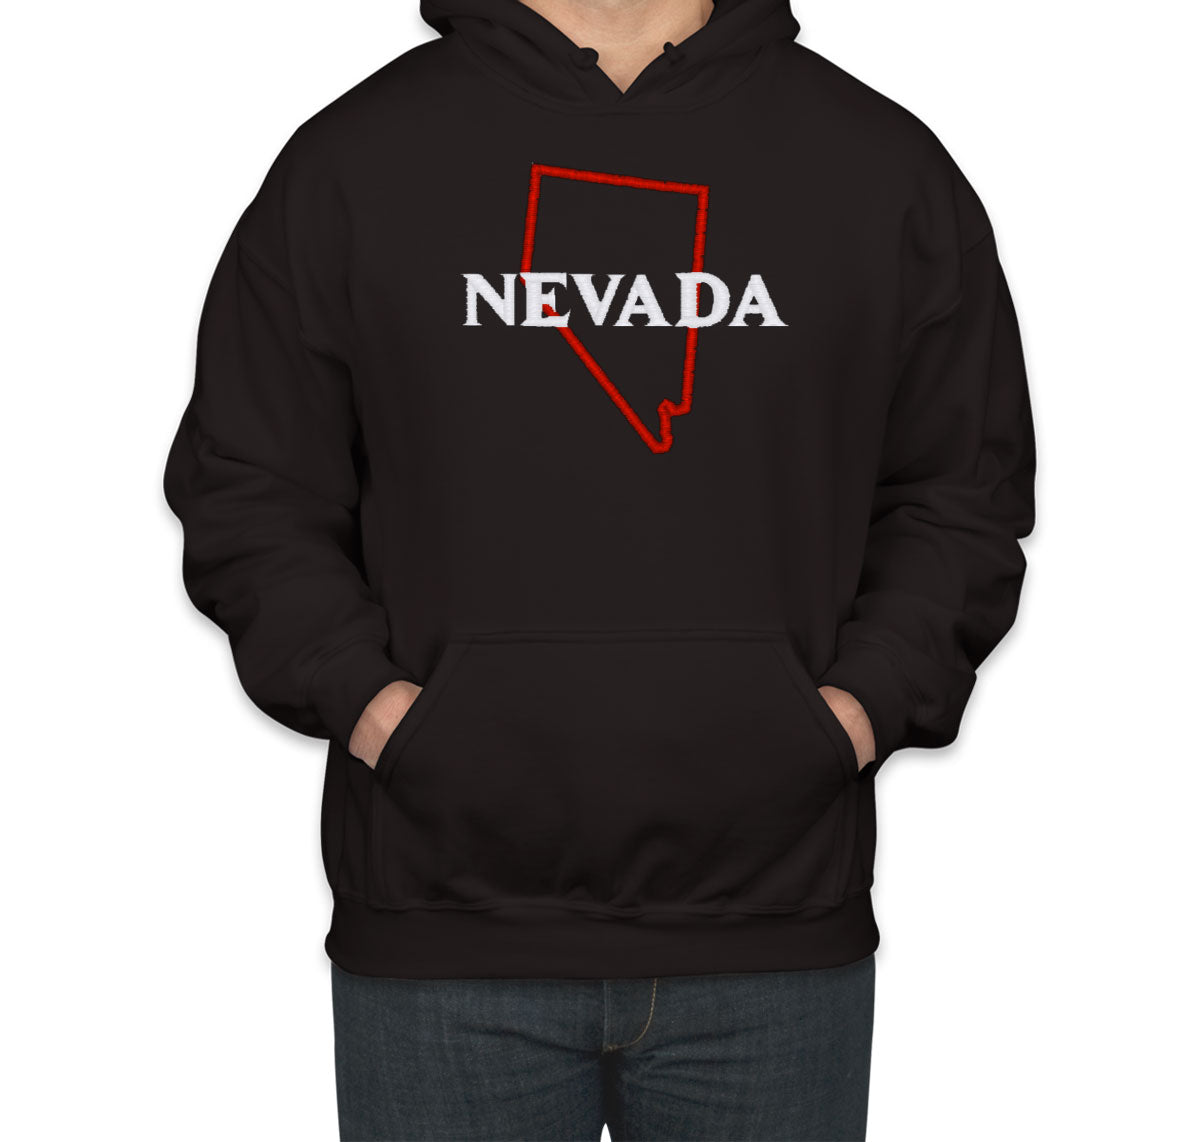 Nevada Embroidered Unisex Hoodie